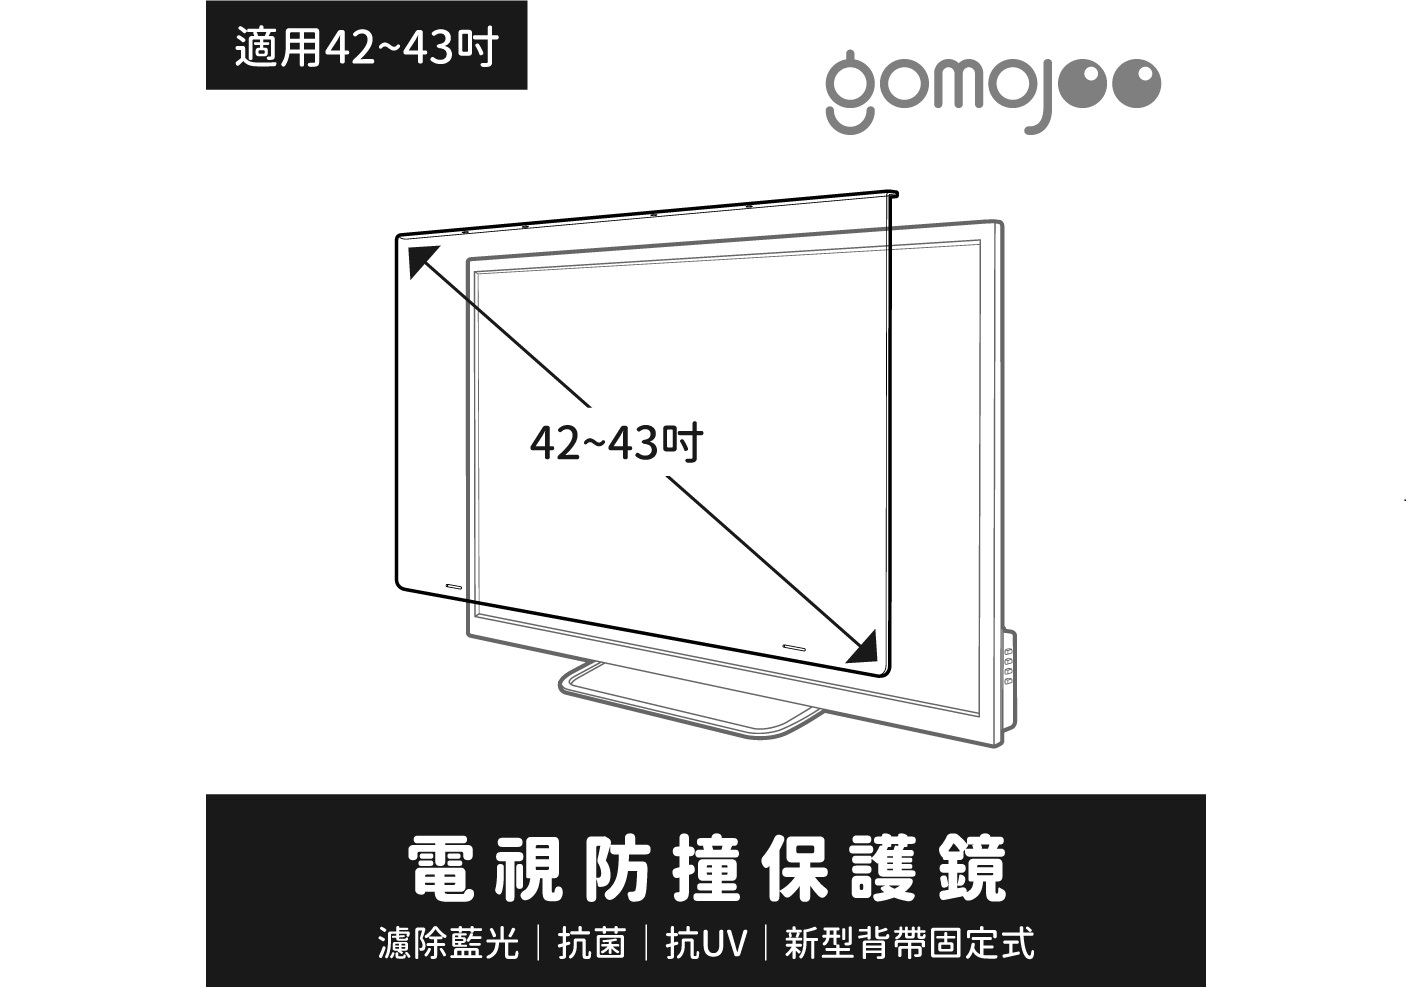 (42-43吋)【gomojoo】新型專利 電視防撞保護鏡/濾藍光.降 